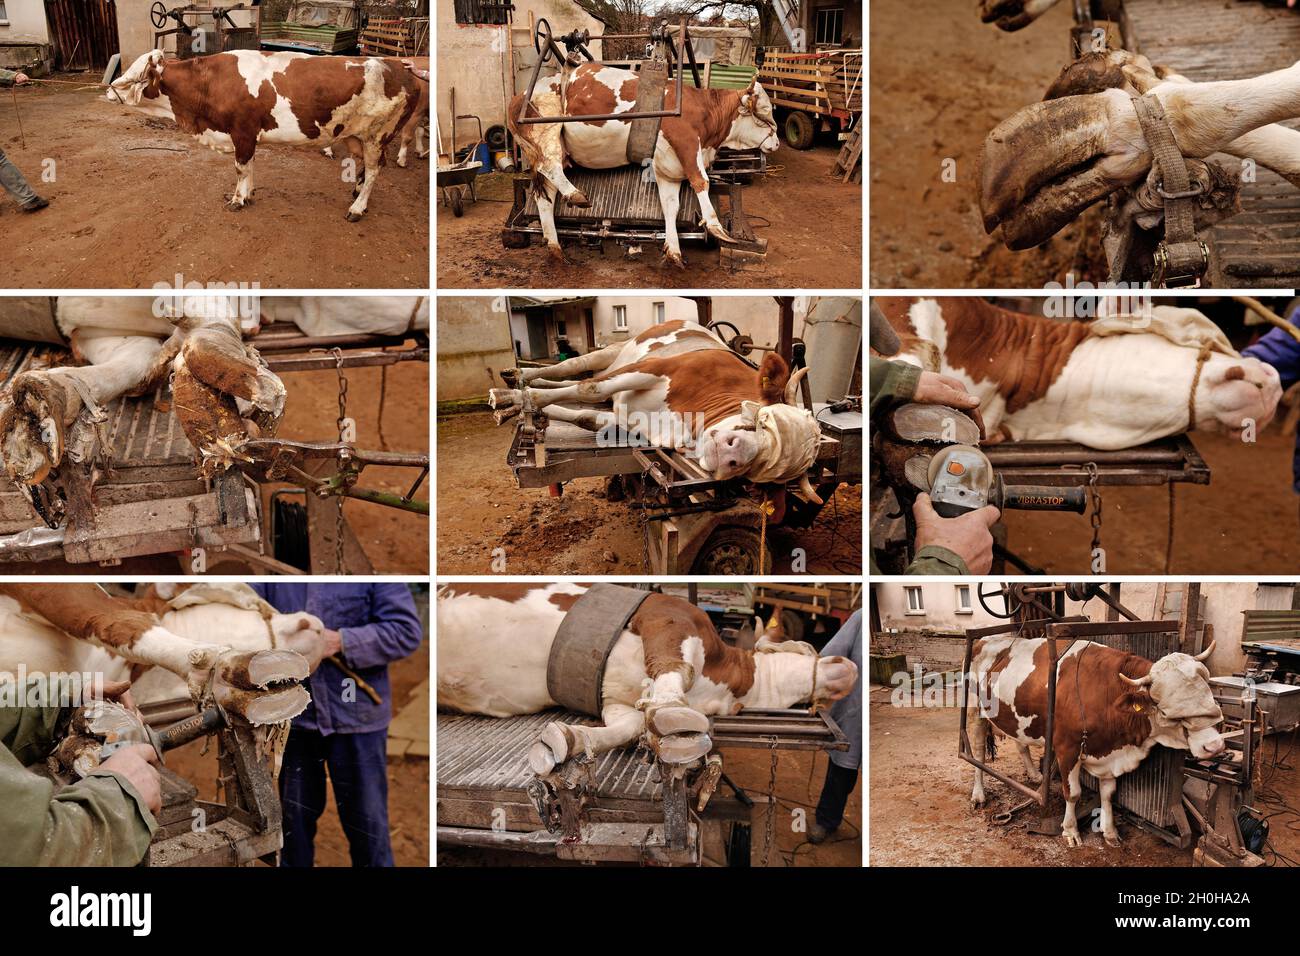 Zoccolo per bovini immagini e fotografie stock ad alta risoluzione - Alamy